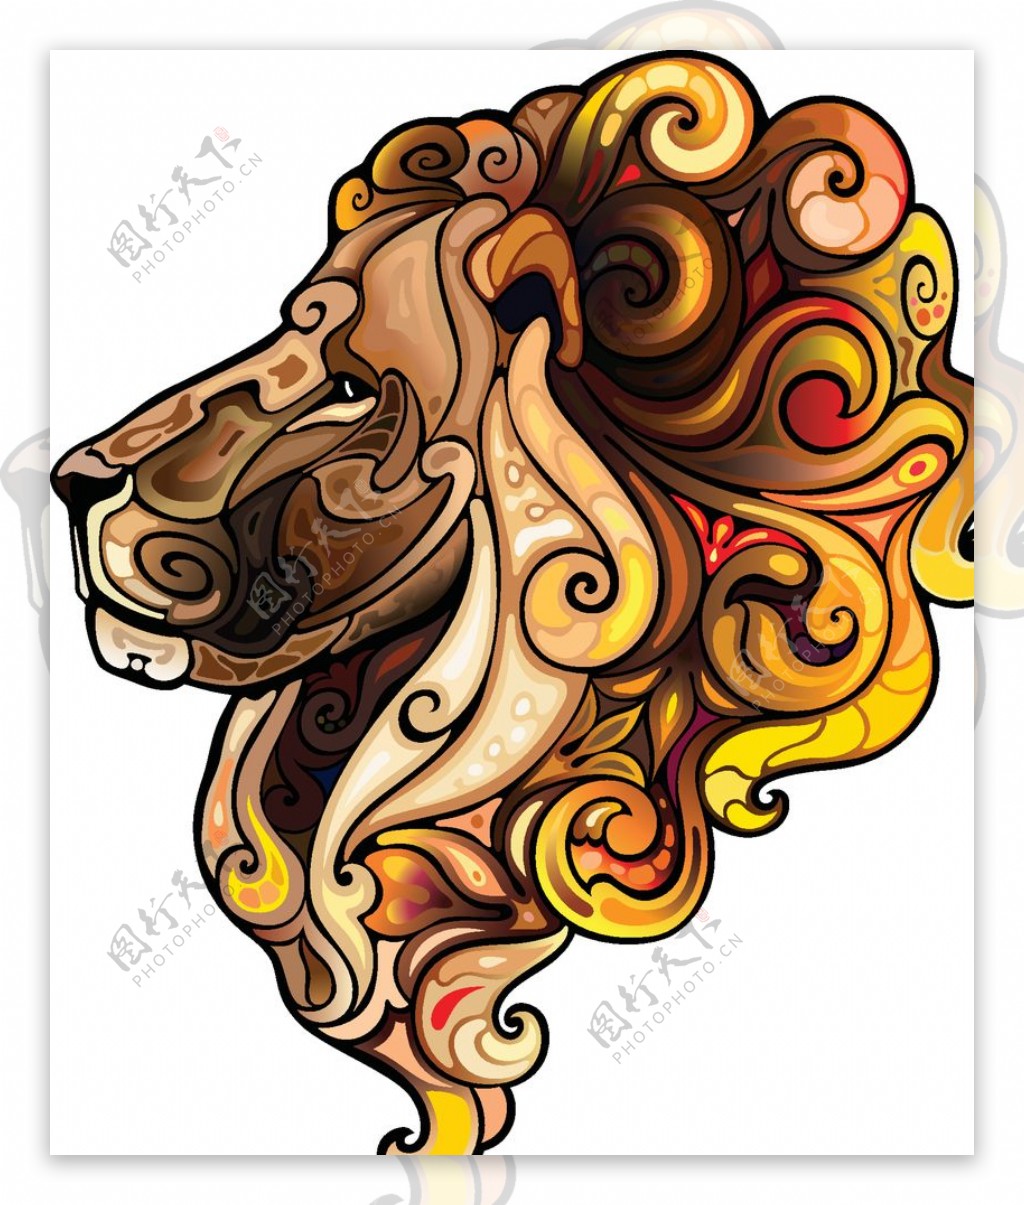 狮子彩色涂鸦动物矢量图片